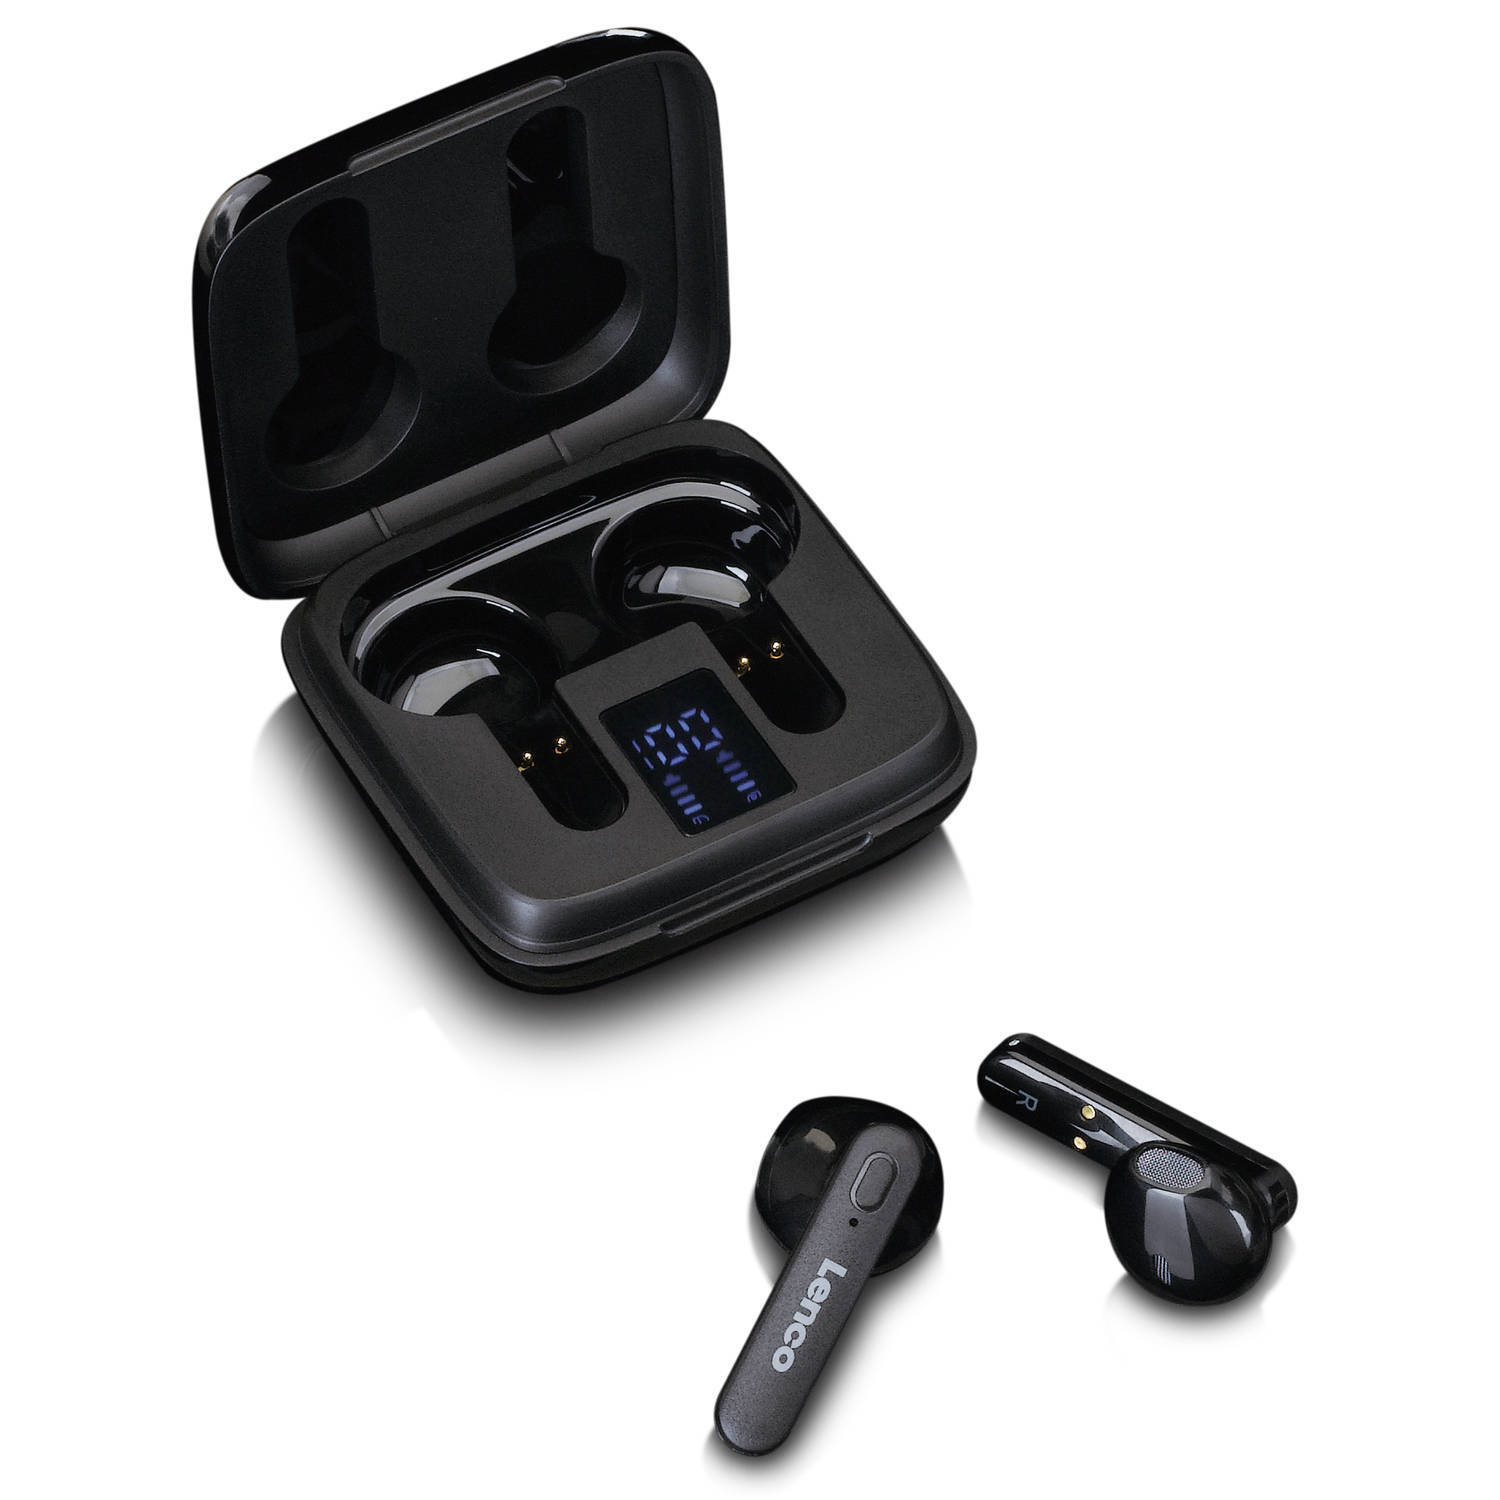 Lenco draadloze oordopjes, laadcase met display, bluetooth® en tws epb-430bk zwart